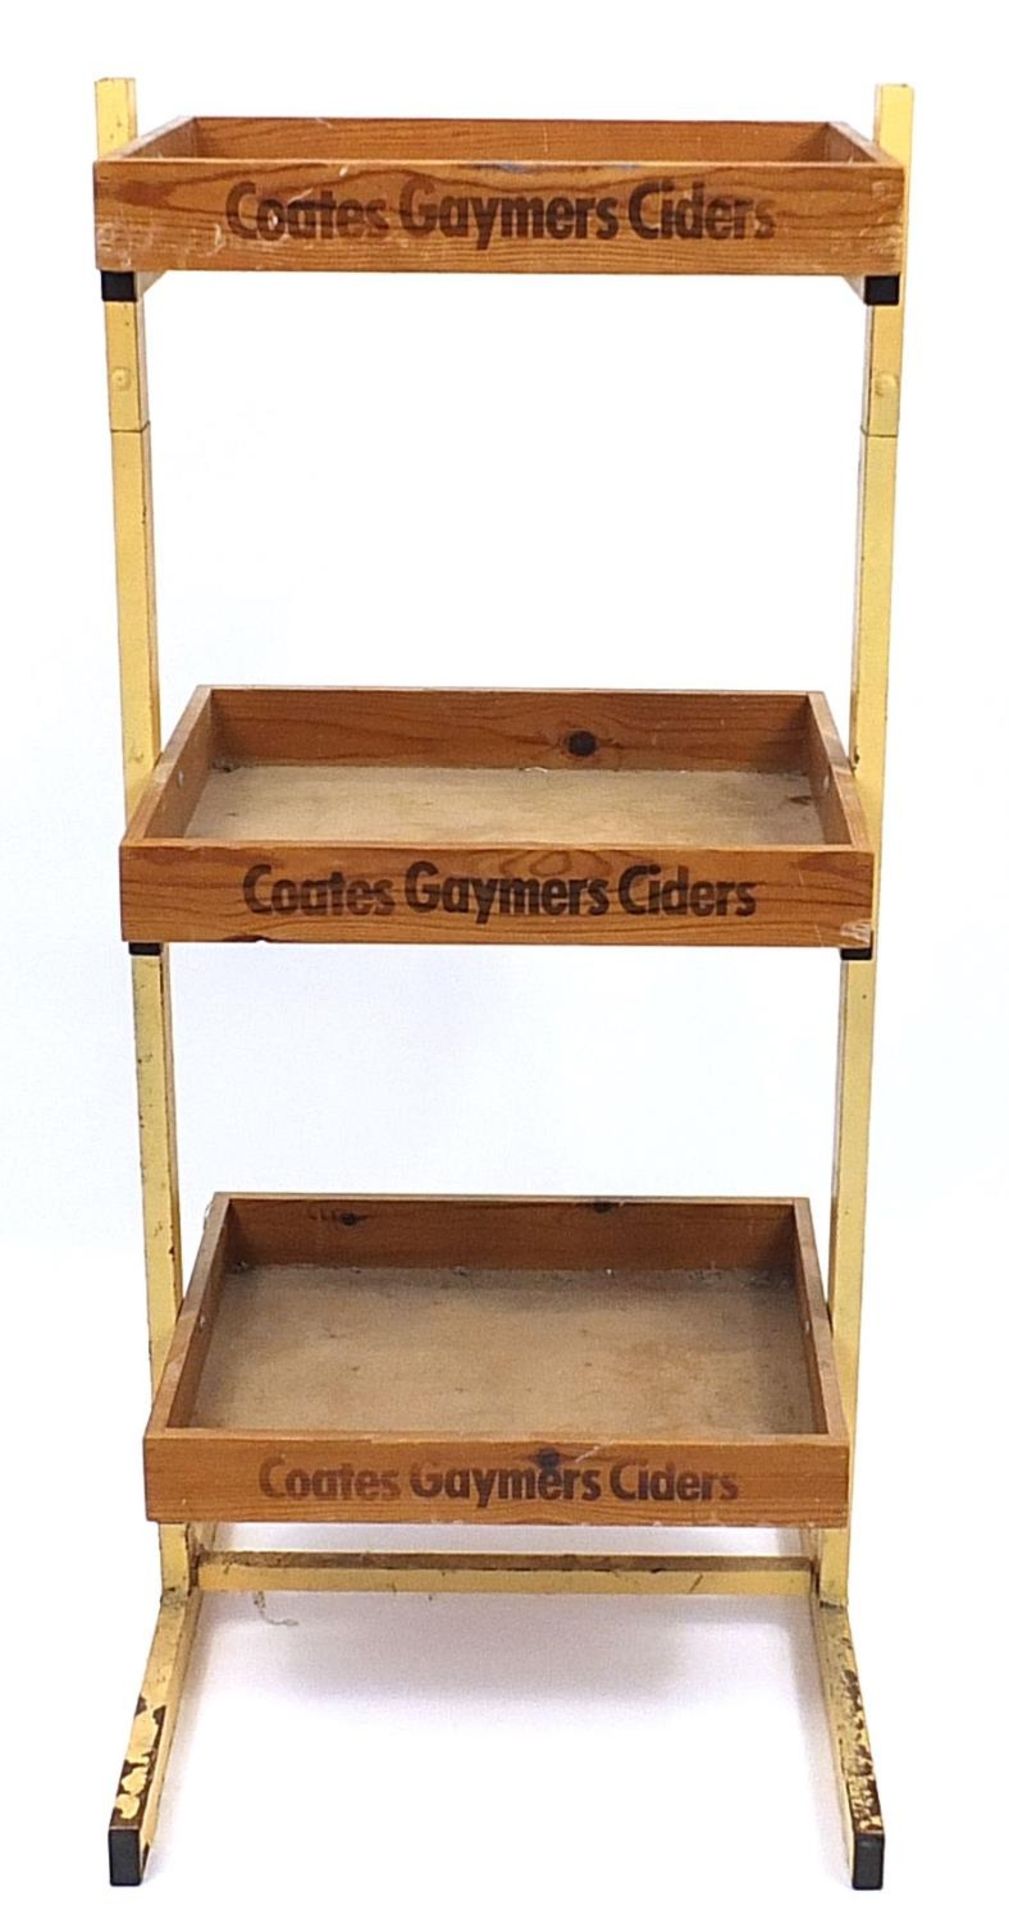 Vintage Coates Gaymers Ciders advertising three tier display stand, 104cm H x 47cm W x 51cm D - Image 2 of 4